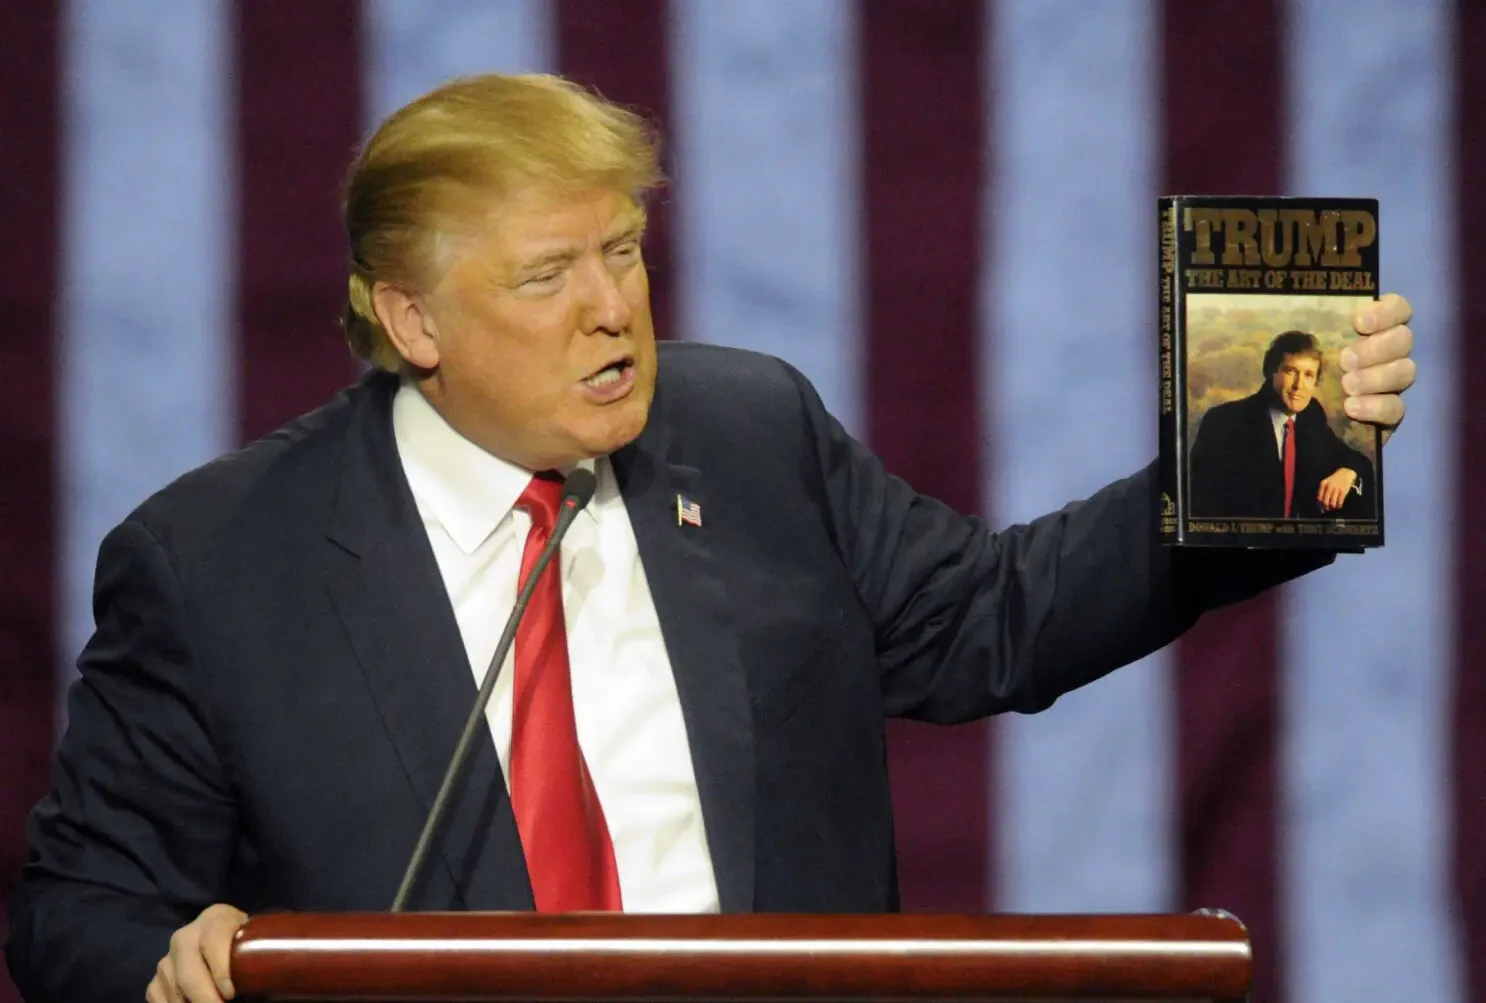 Le livre The Art of The Deal de Donald Trump a été un franc succès